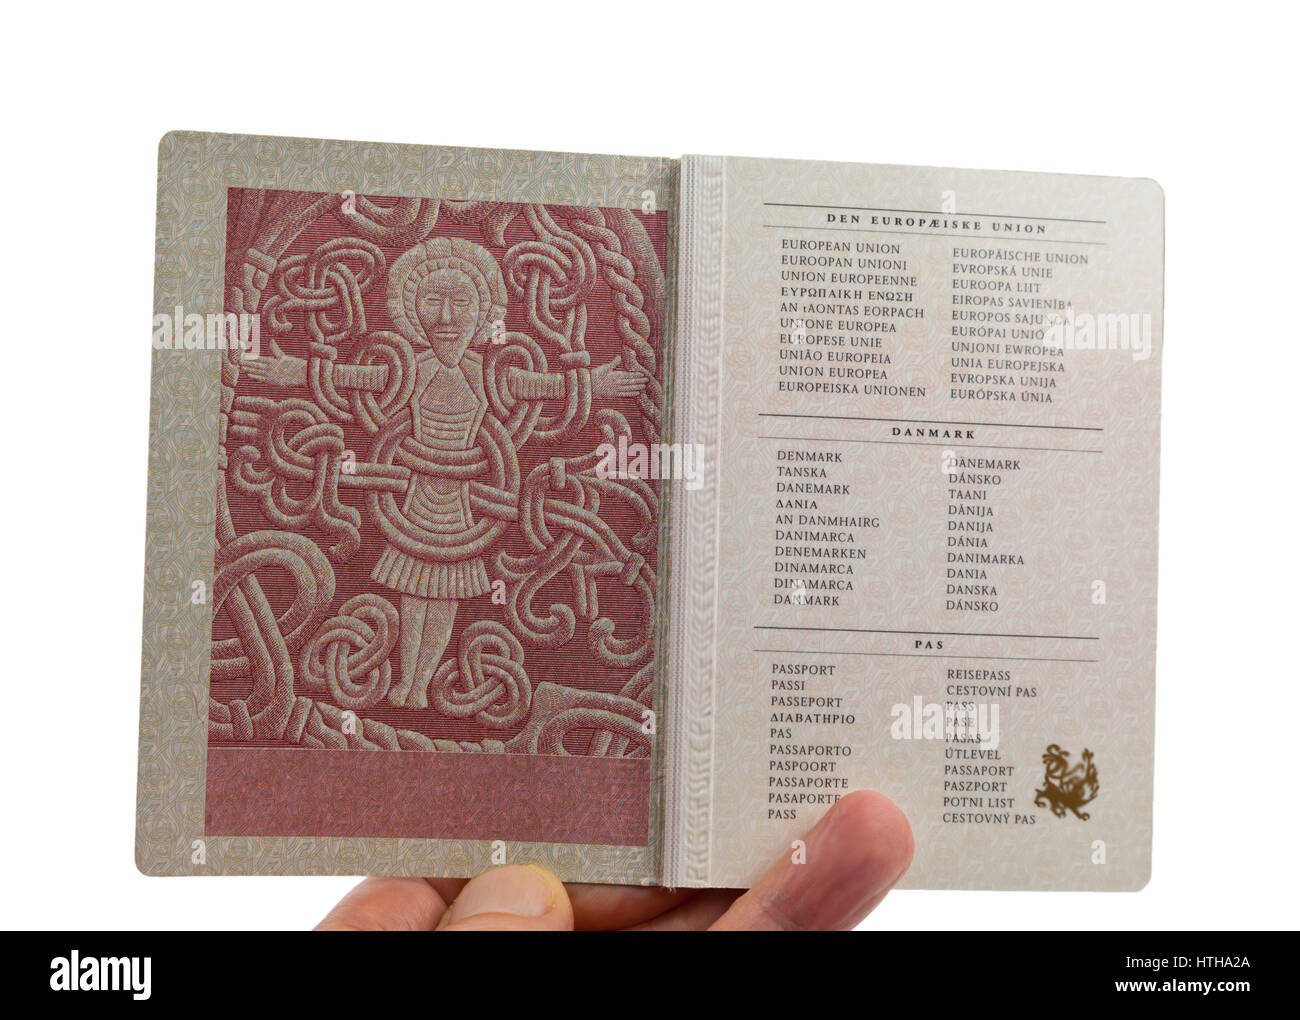 Página 2 en el pasaporte danés muestra la figura de Cristo en el Jelling Rune Stone planteada por el rey vikingo Harald Bluetooth en el siglo 10 Foto de stock